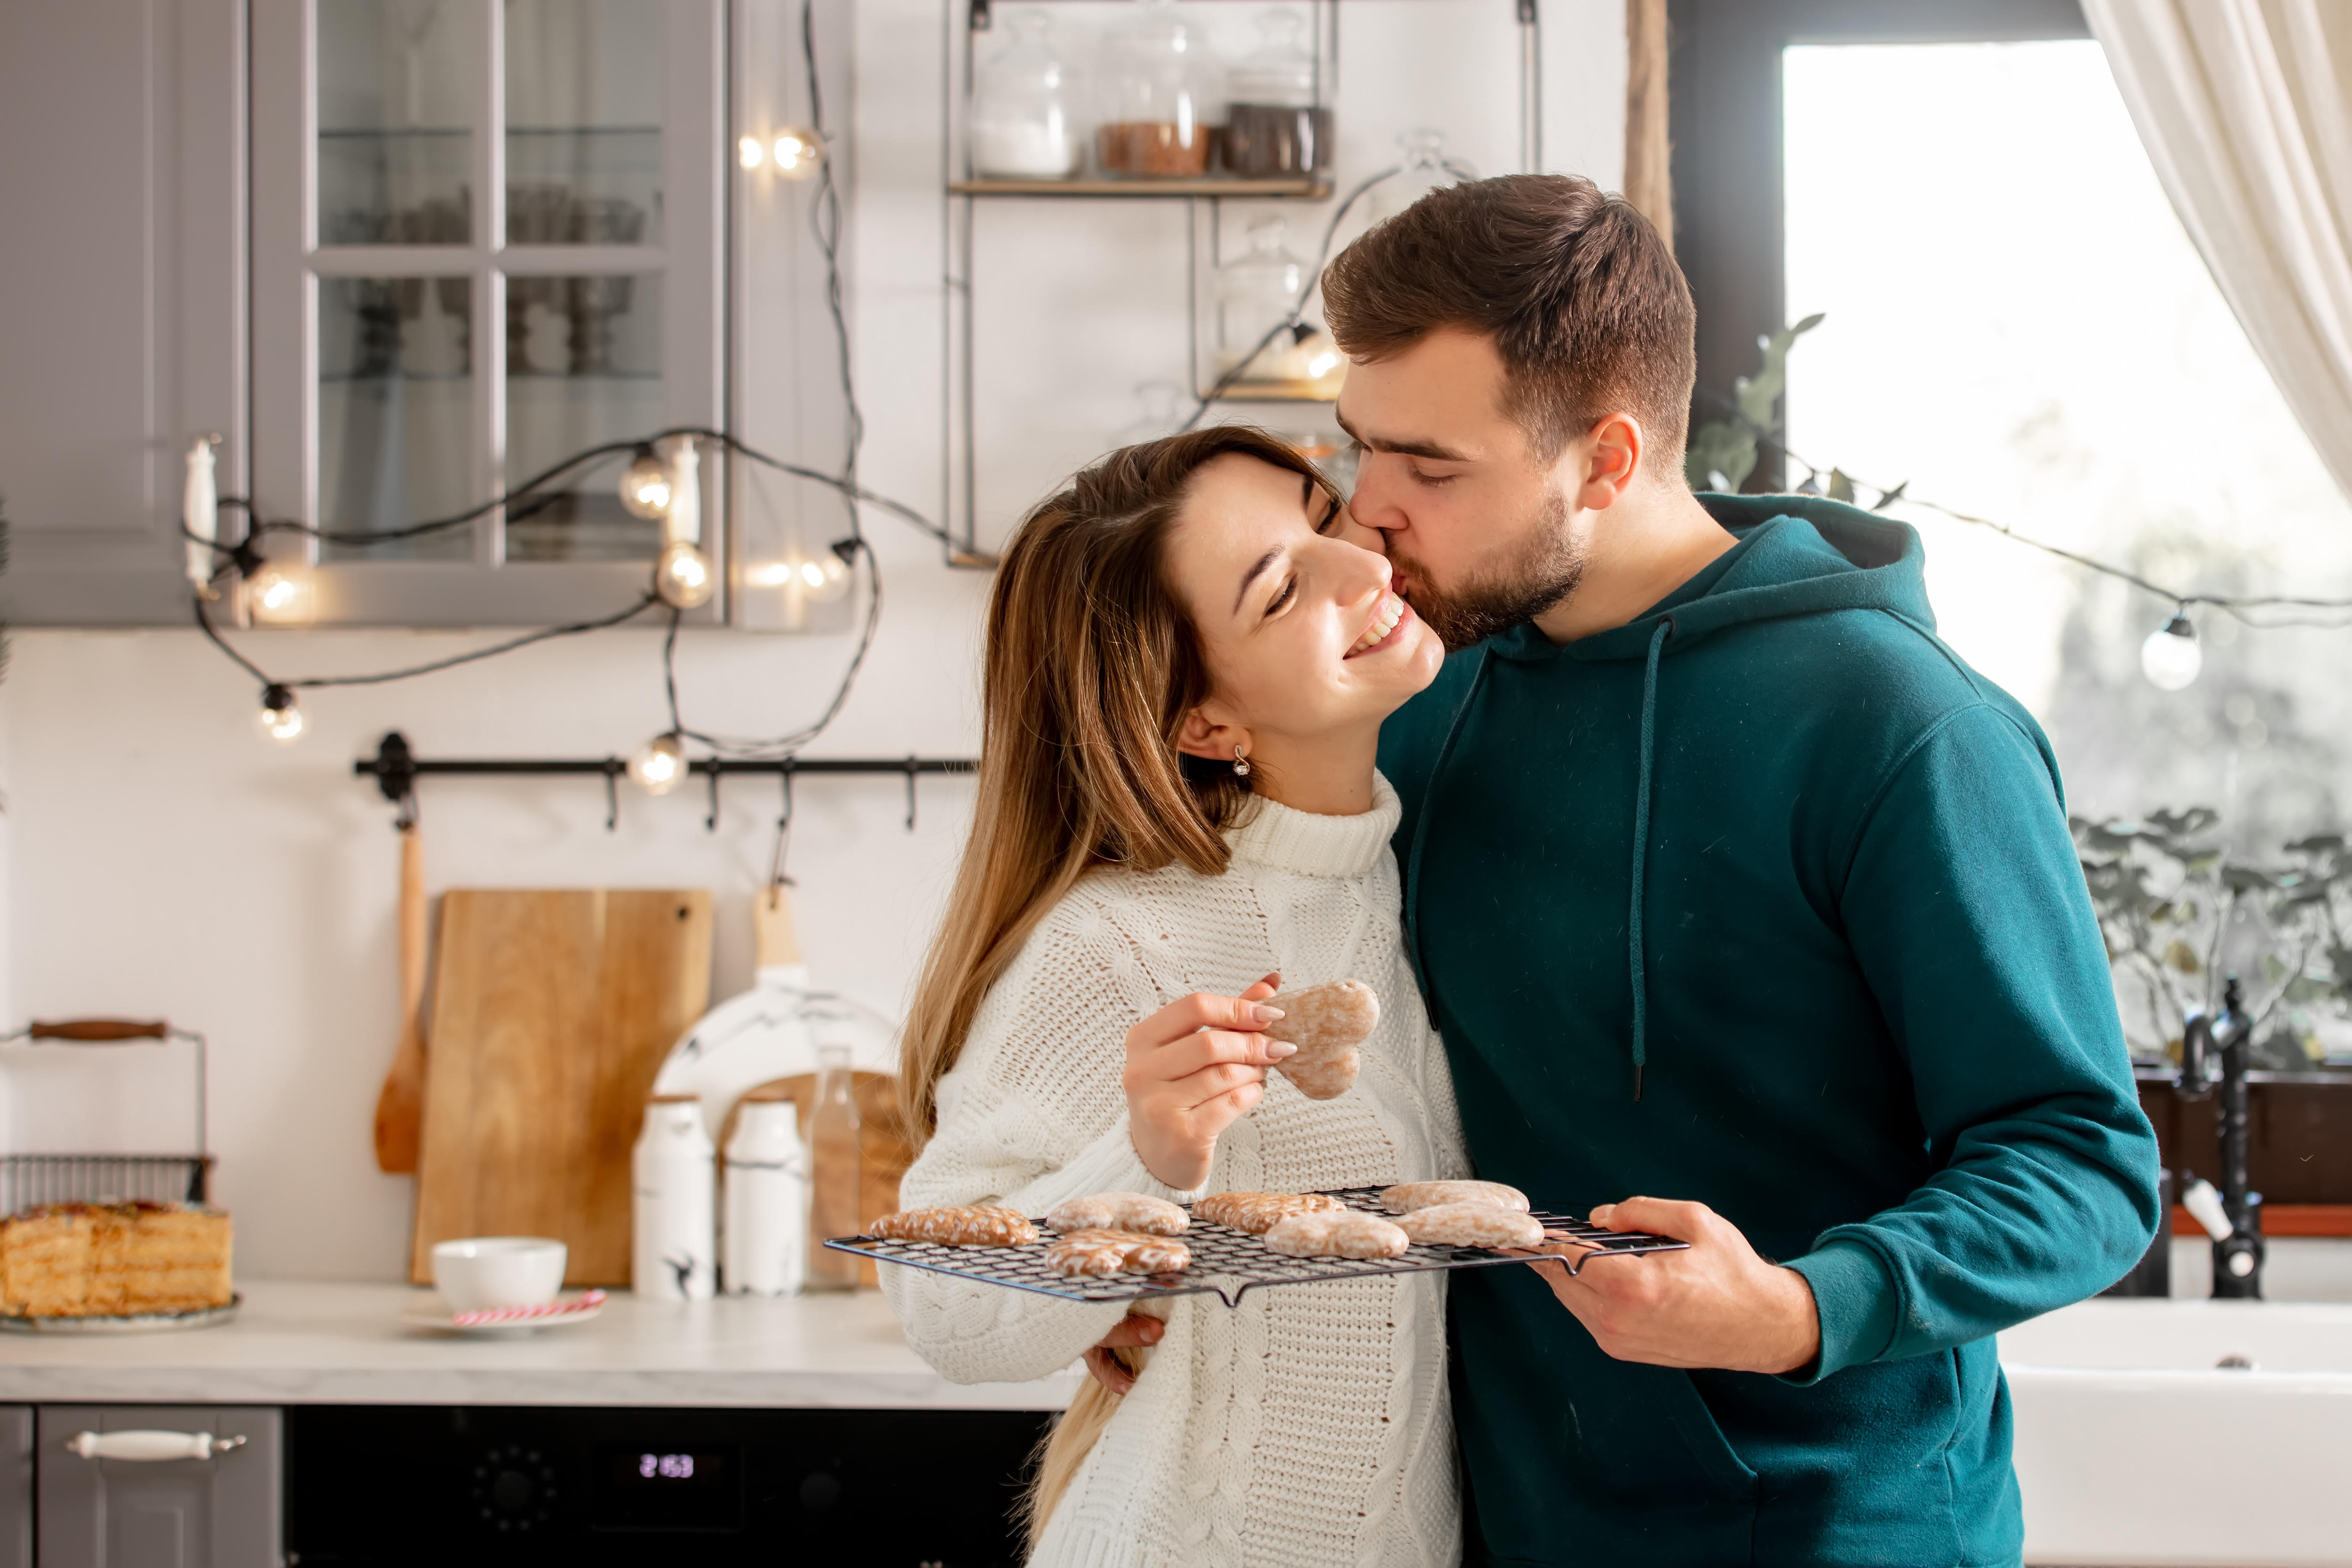 Un jeune couple prépare des biscuits dans la cuisine | Source : Shutterstock